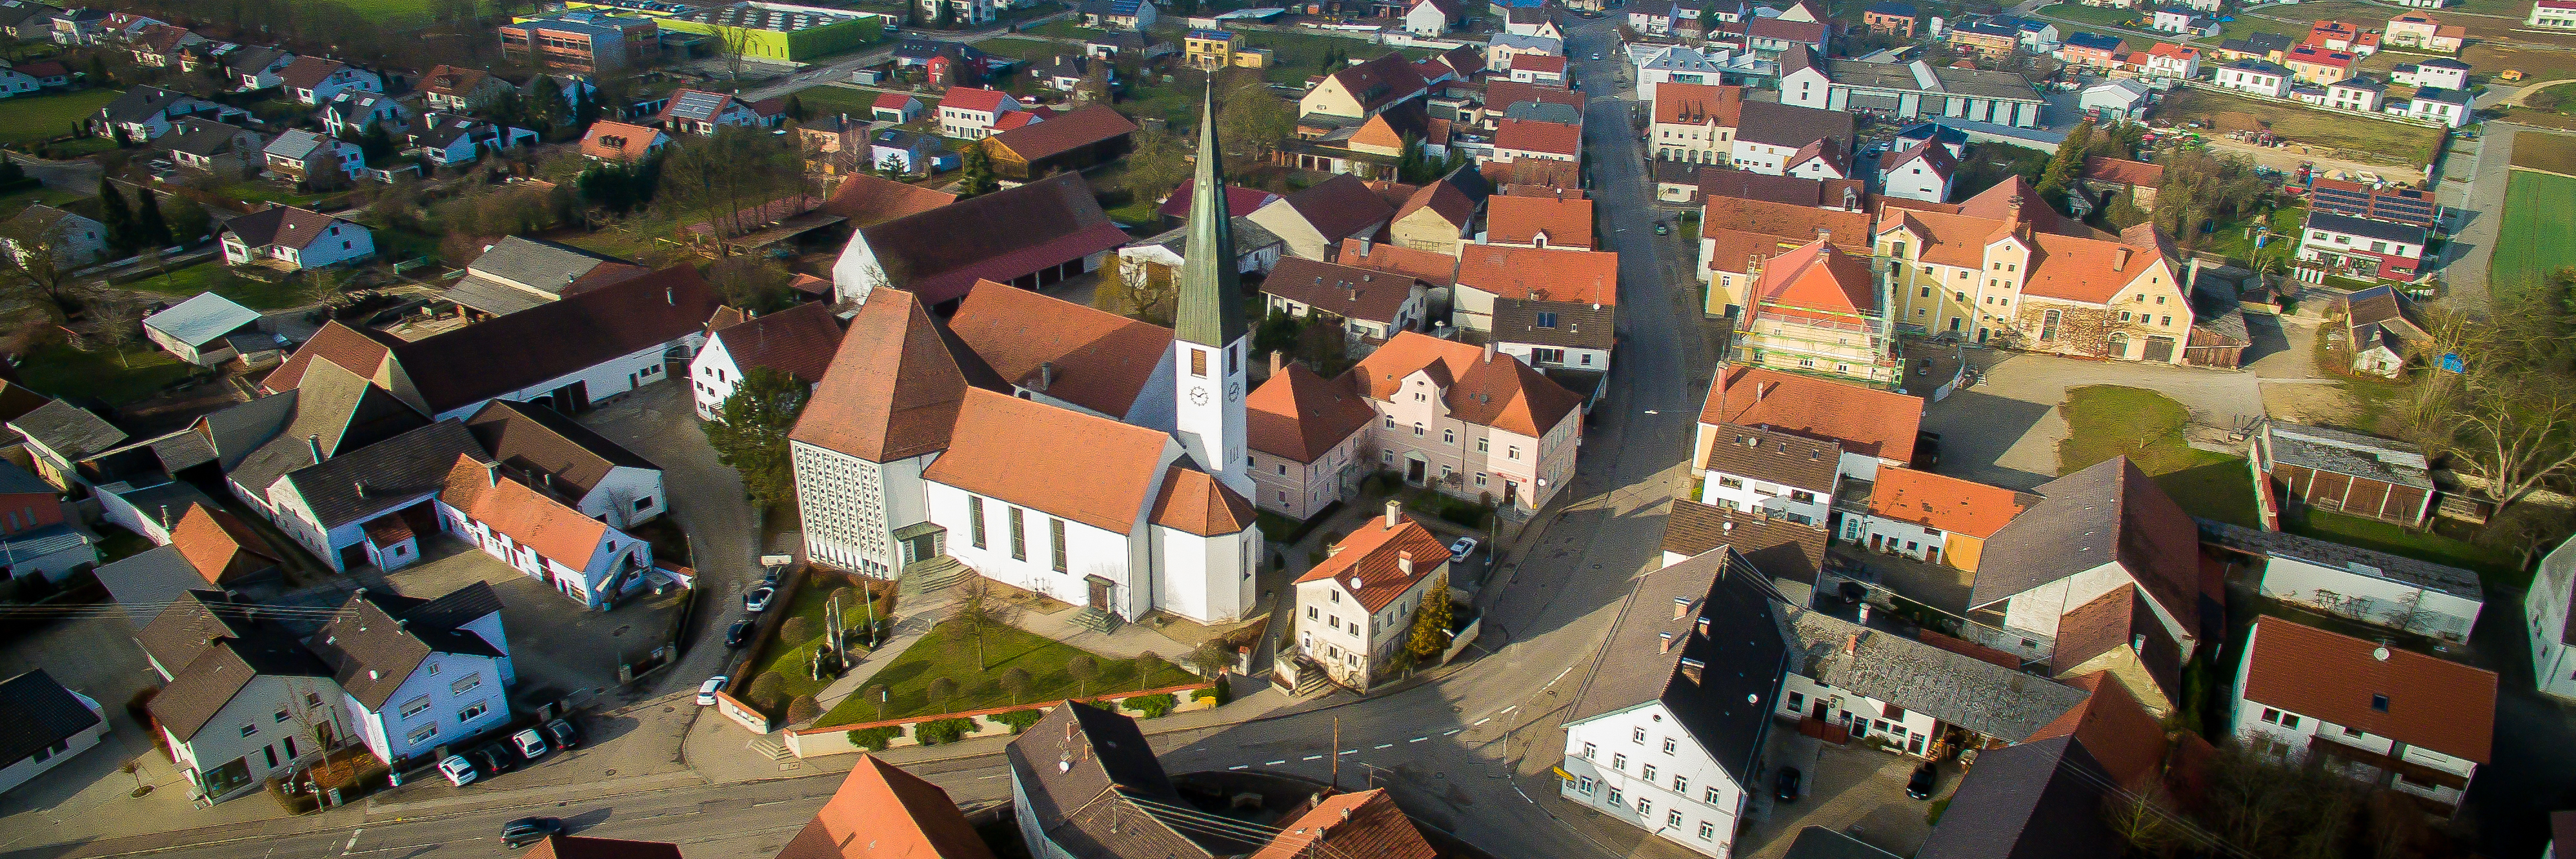 Luftbild der Ortsmitte von Eitensheim mit Kirche und Carlshof